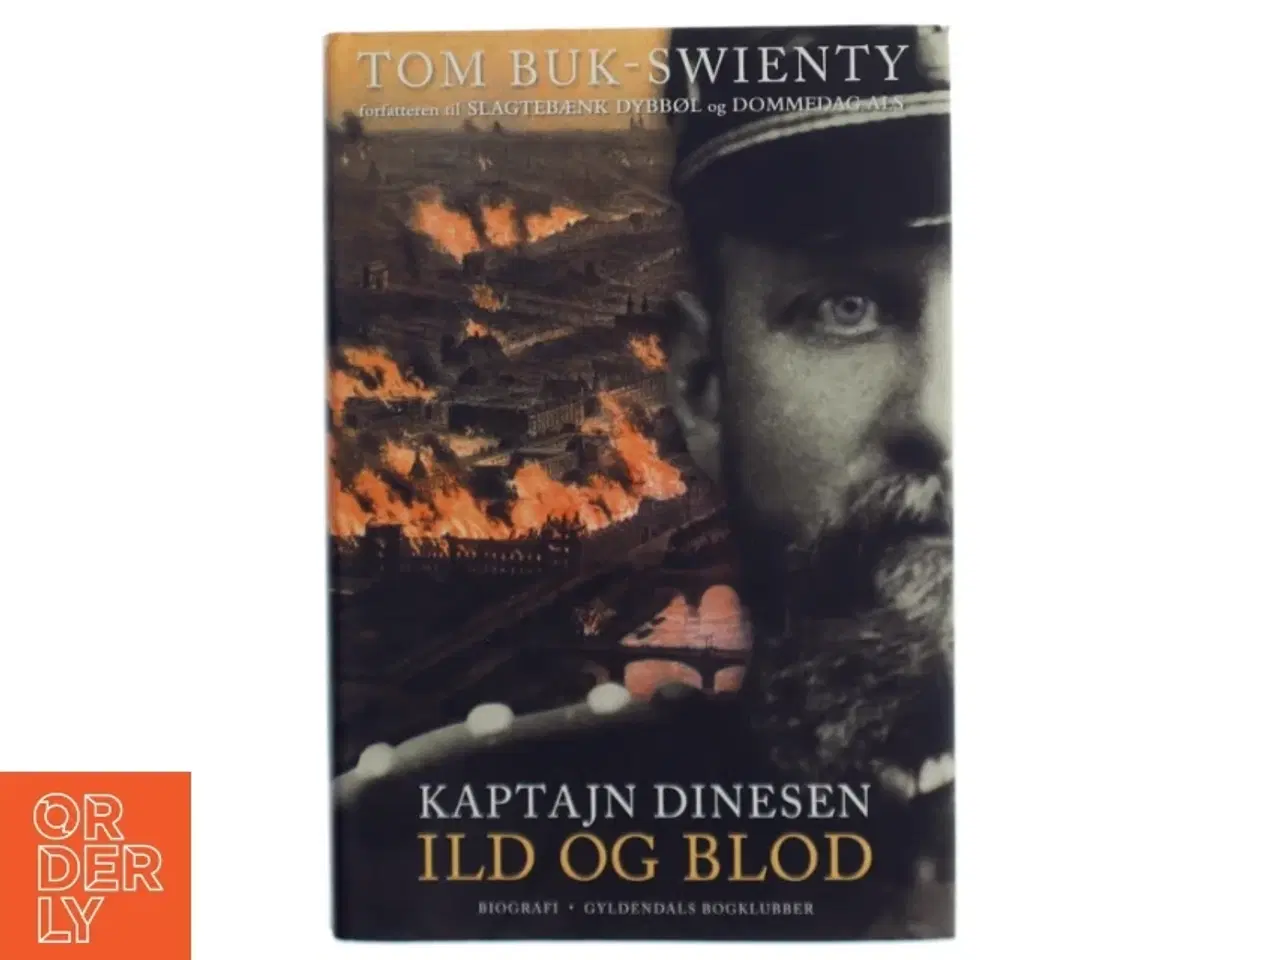 Billede 1 - Kaptajn Dinesen. Bind 1, Ild og blod af Tom Buk-Swienty (Bog)